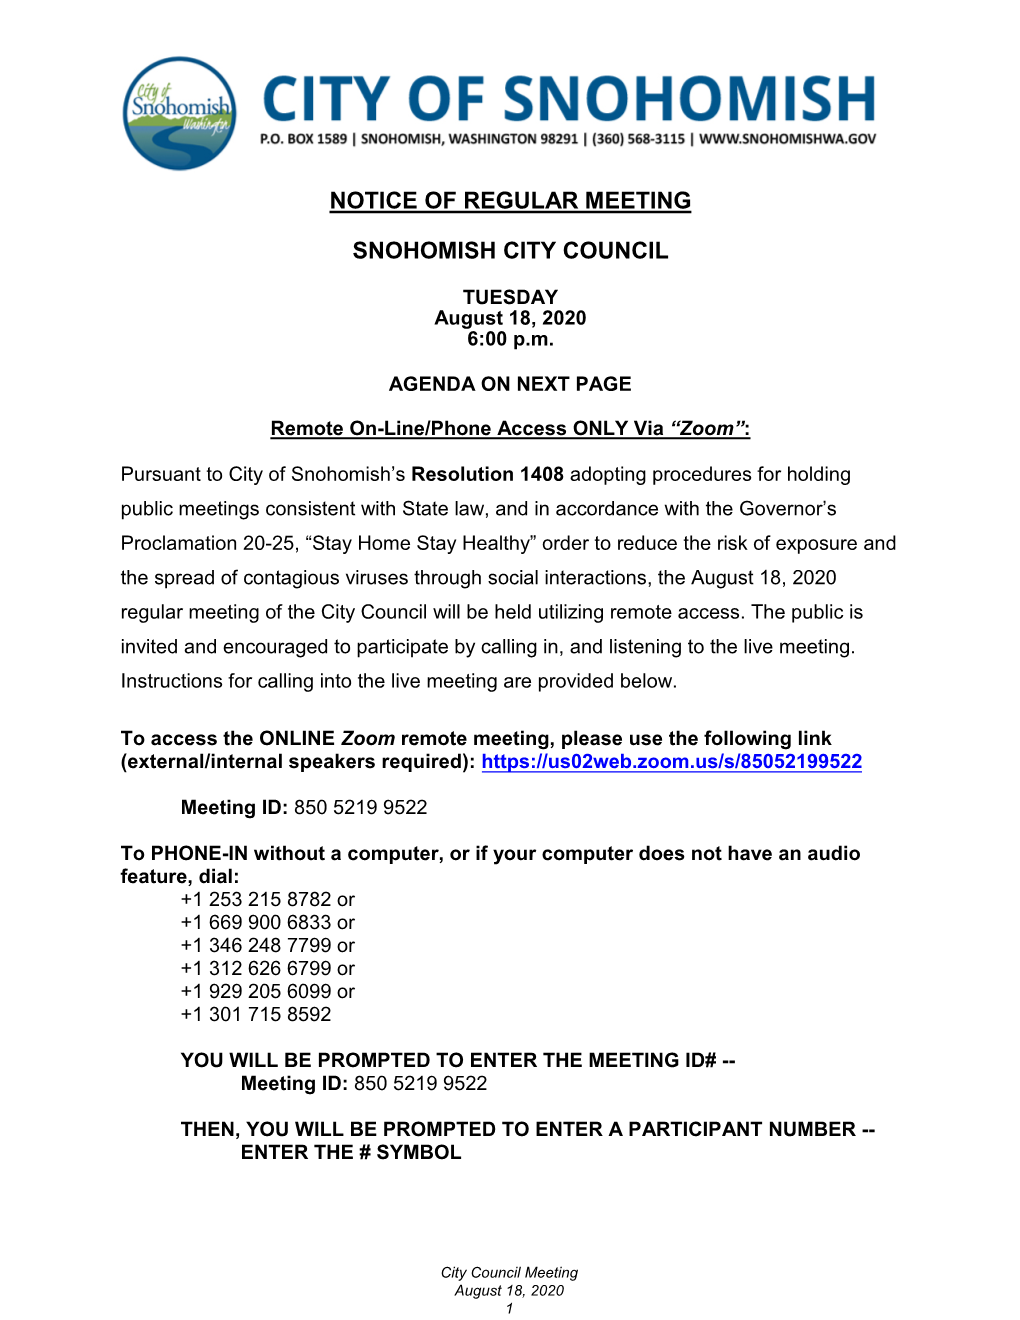 Notice of Regular Meeting Snohomish City Council